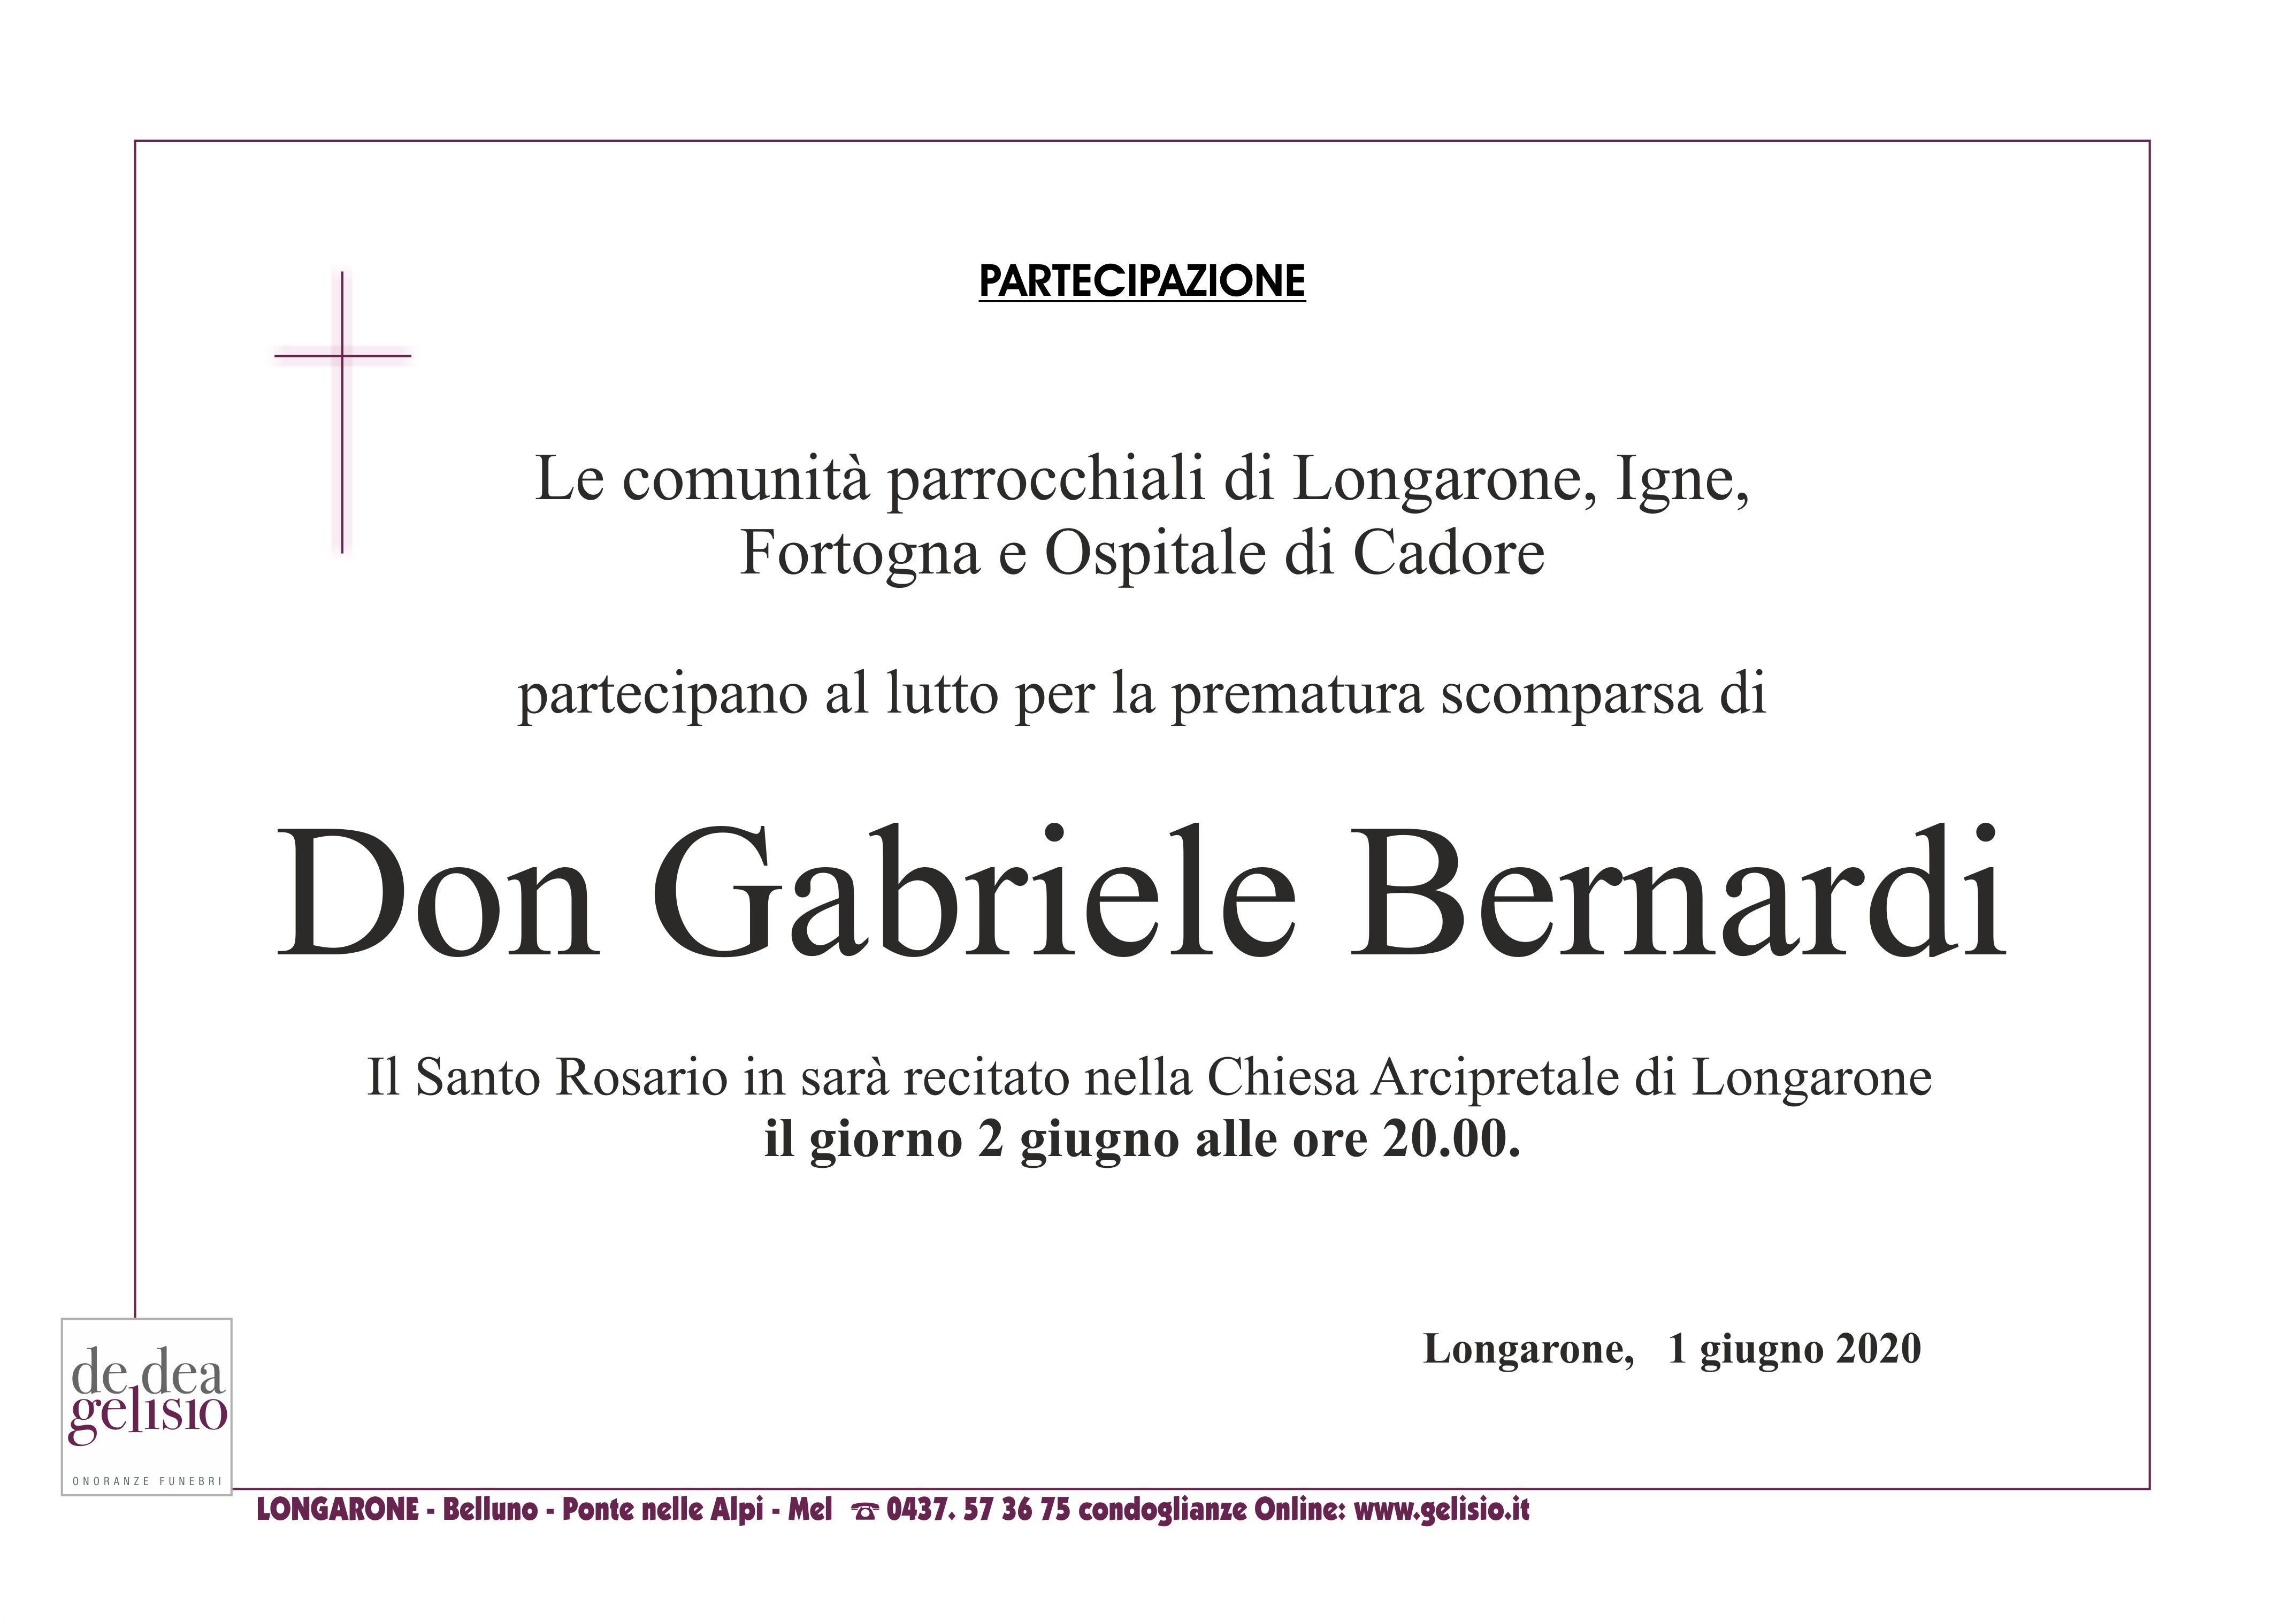 Don Gabriele Bernardi partecipazione